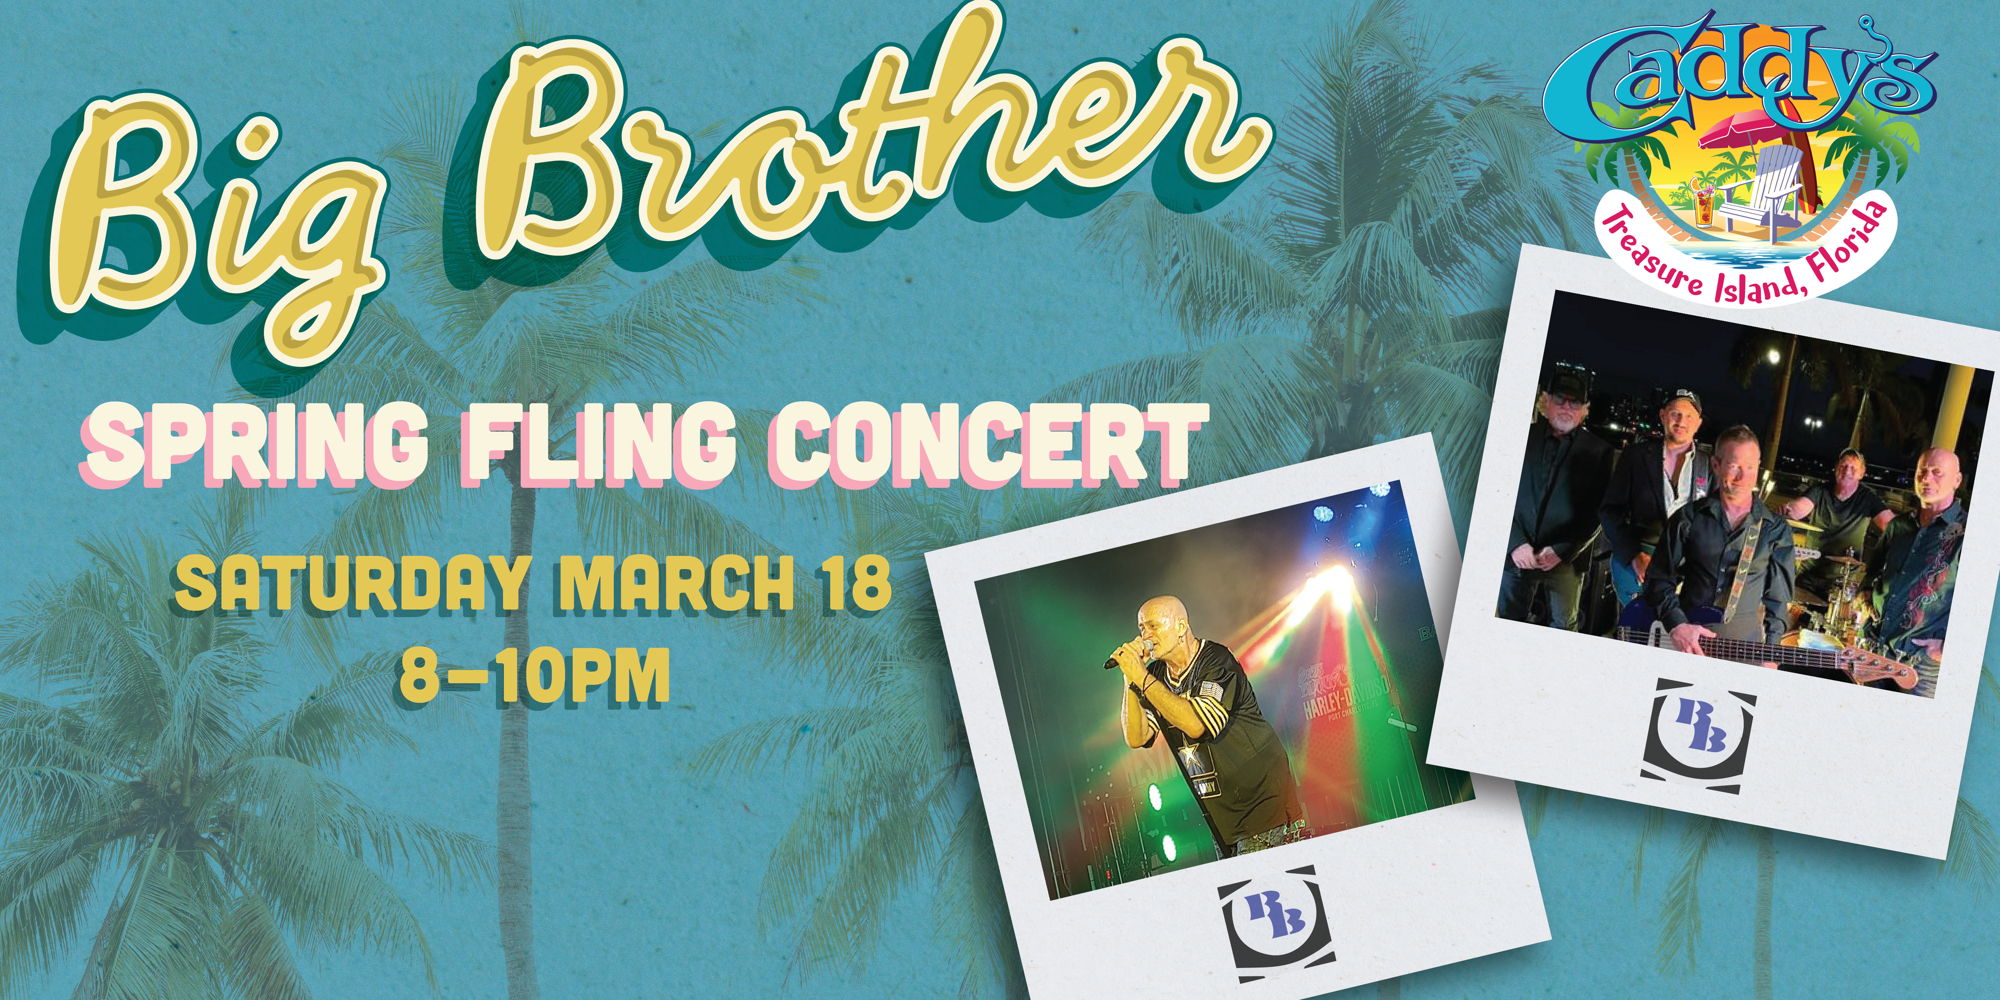 Big Brother Spring Fling Concert! promotional image